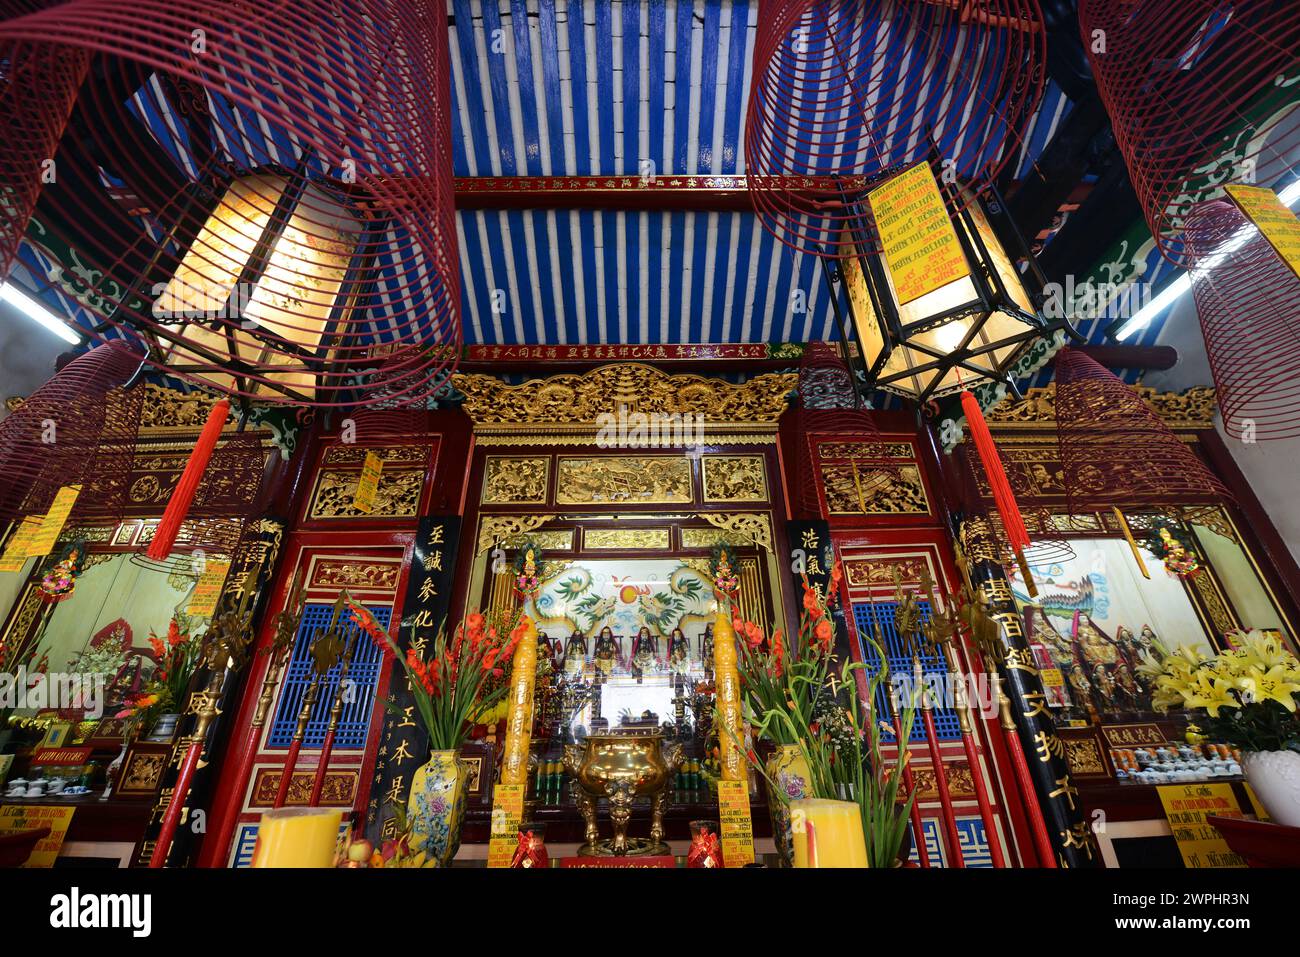 Hoi Quan Phuoc Kien ist ein kunstvoller Gottesdienst, der für chinesische Bewohner des 17. Jahrhunderts erbaut wurde und einer Meeresgöttin gewidmet ist. Altstadt von Hội an, Vietnam. Stockfoto